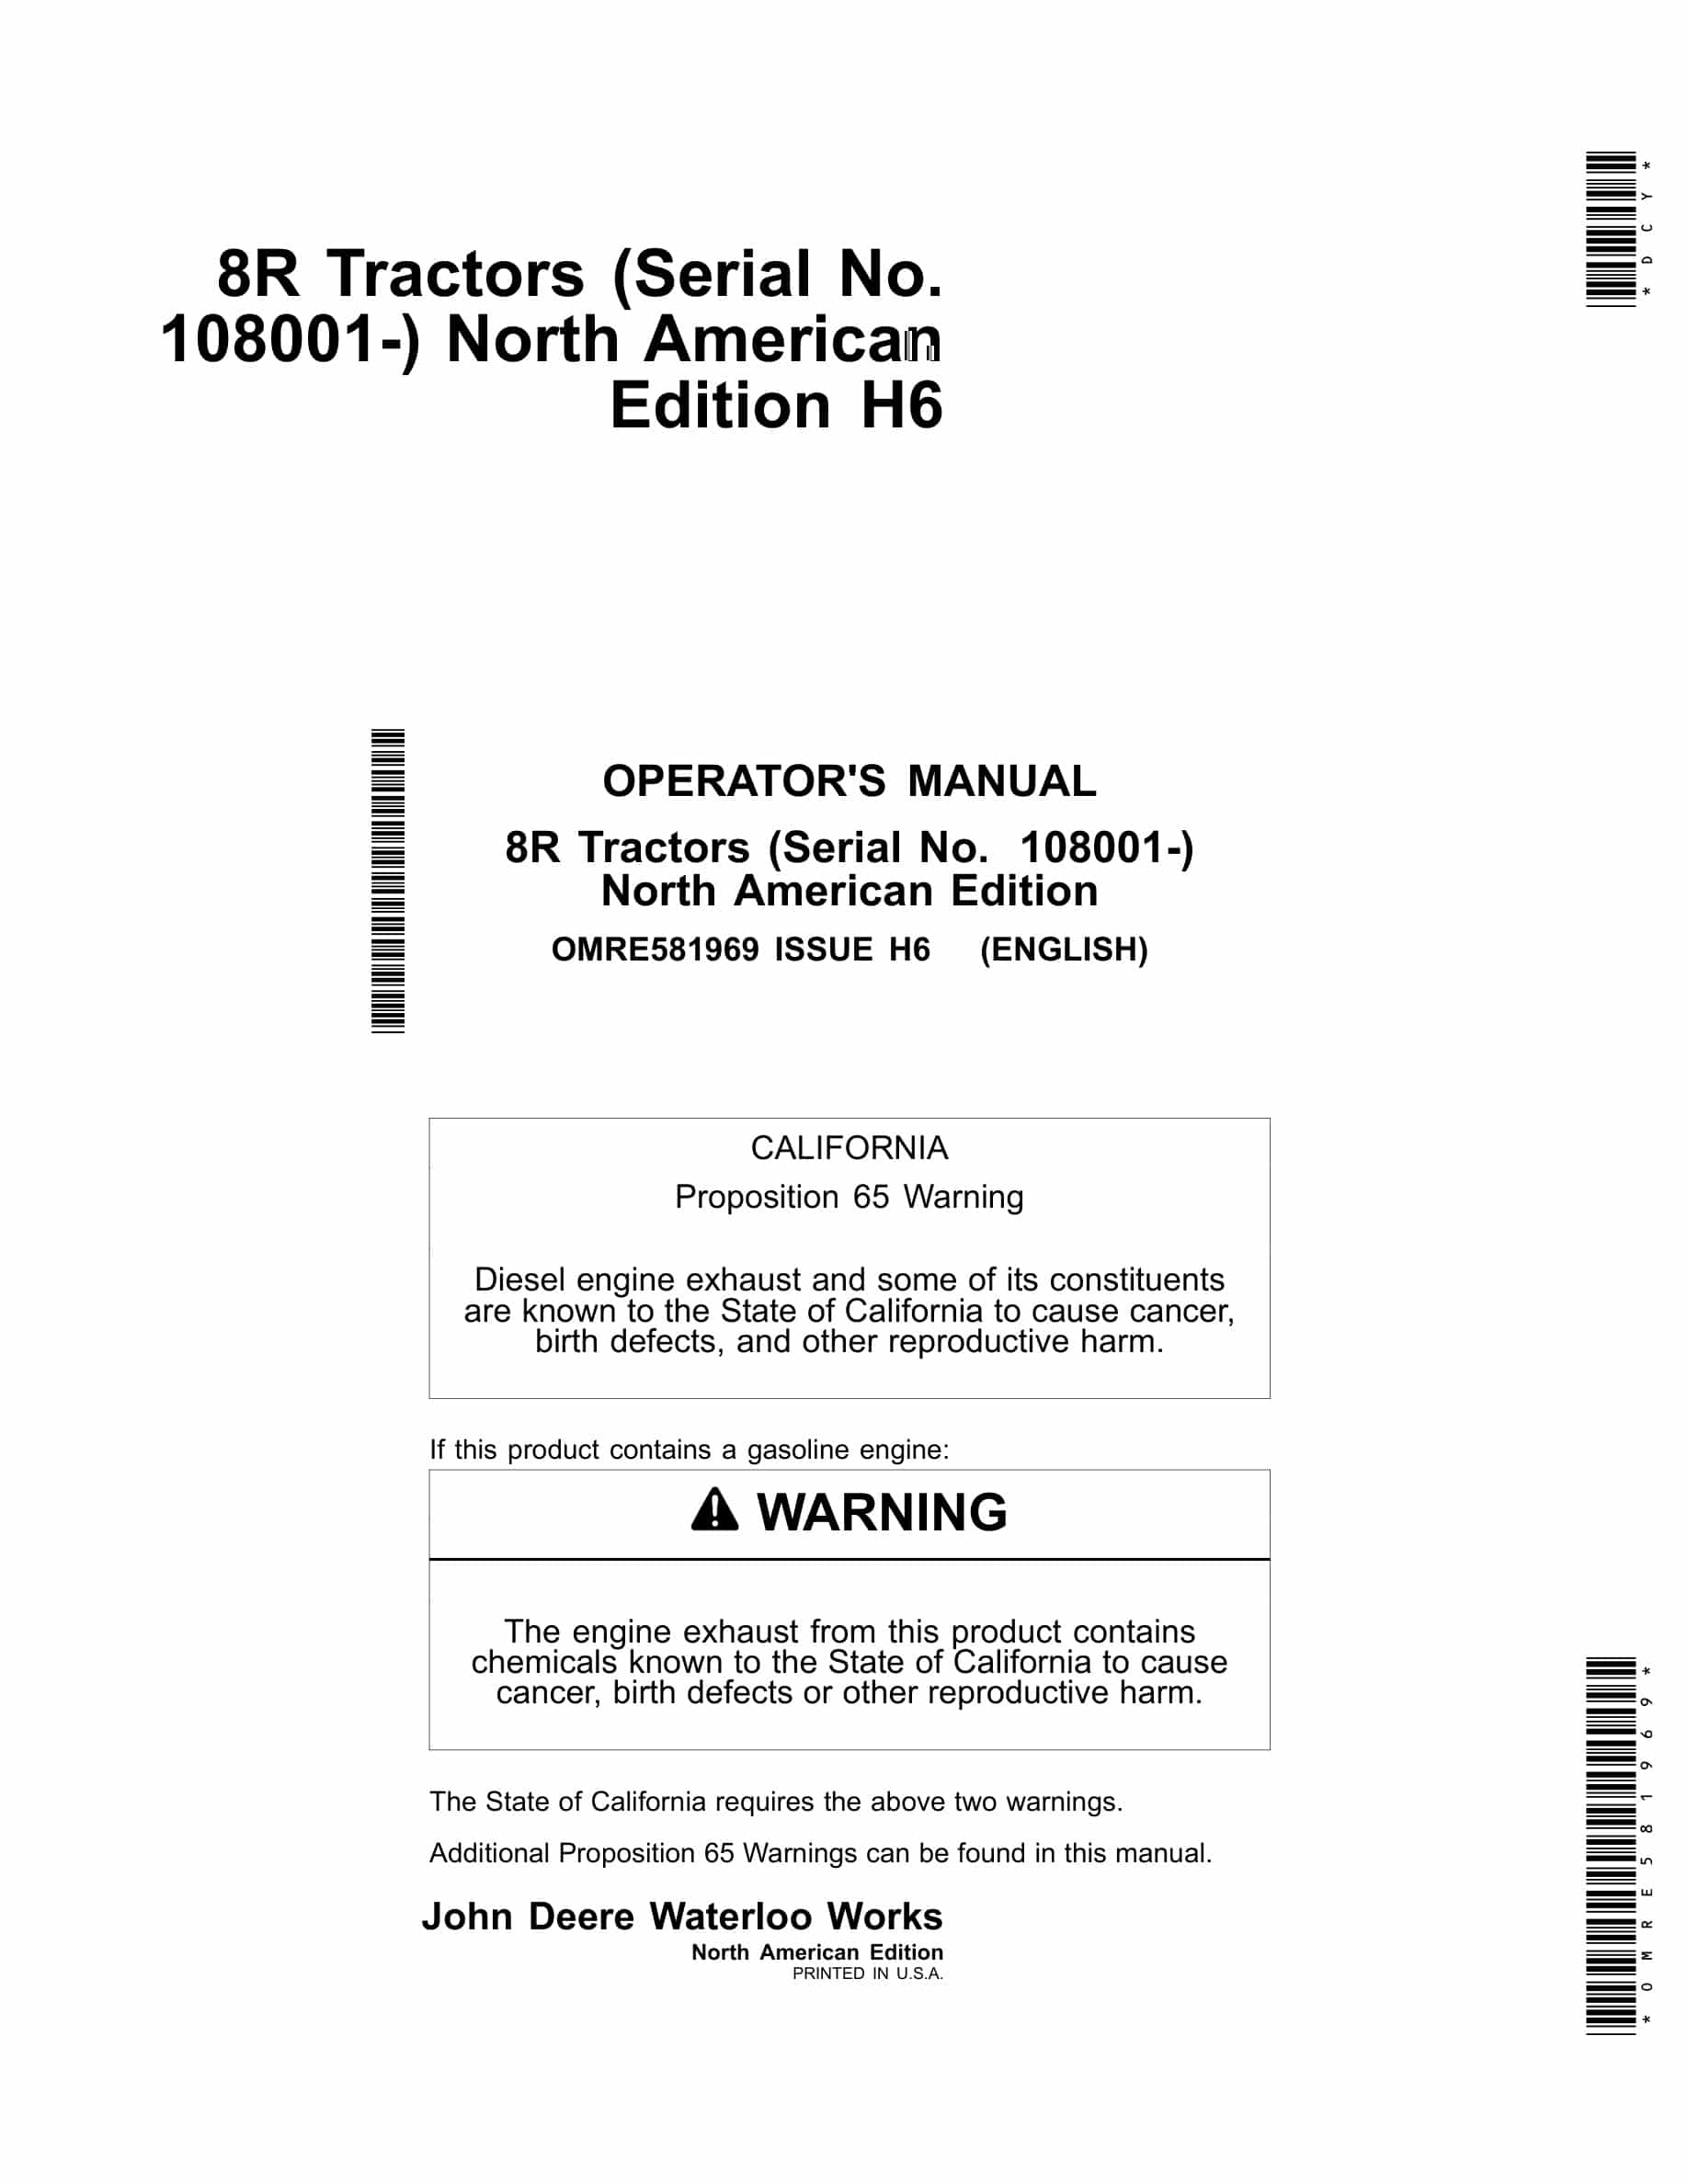 John Deere 8R Tractor Operator Manual OMRE581969-1